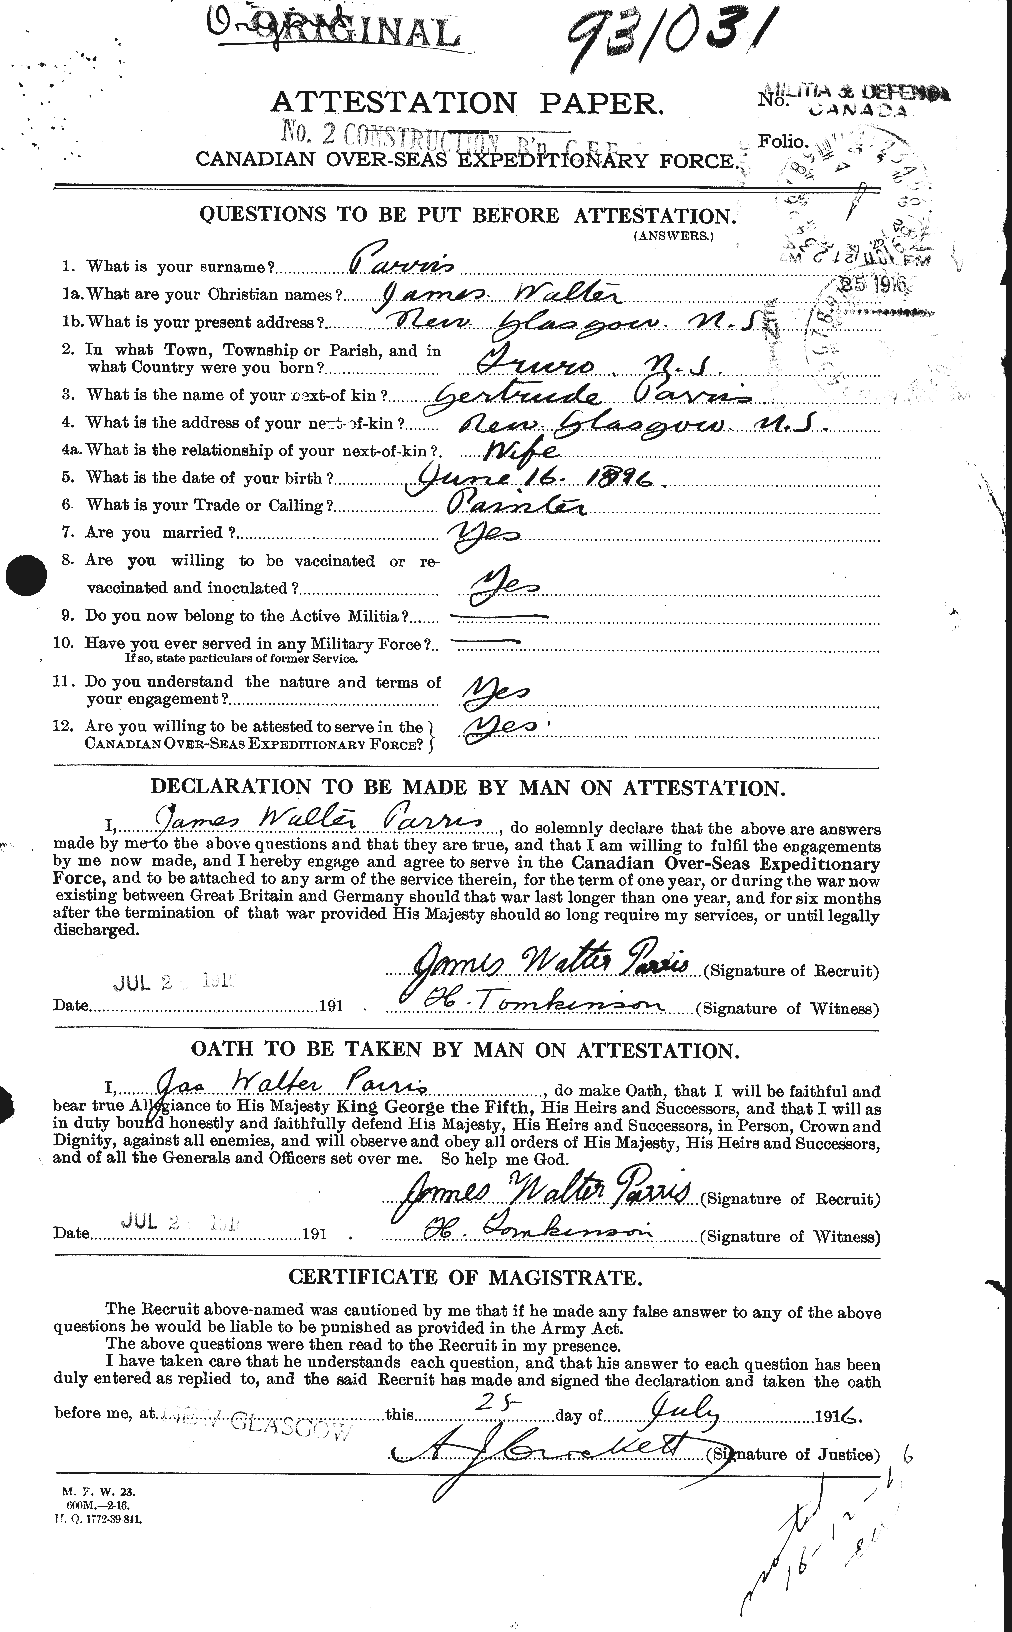 Dossiers du Personnel de la Première Guerre mondiale - CEC 566510a